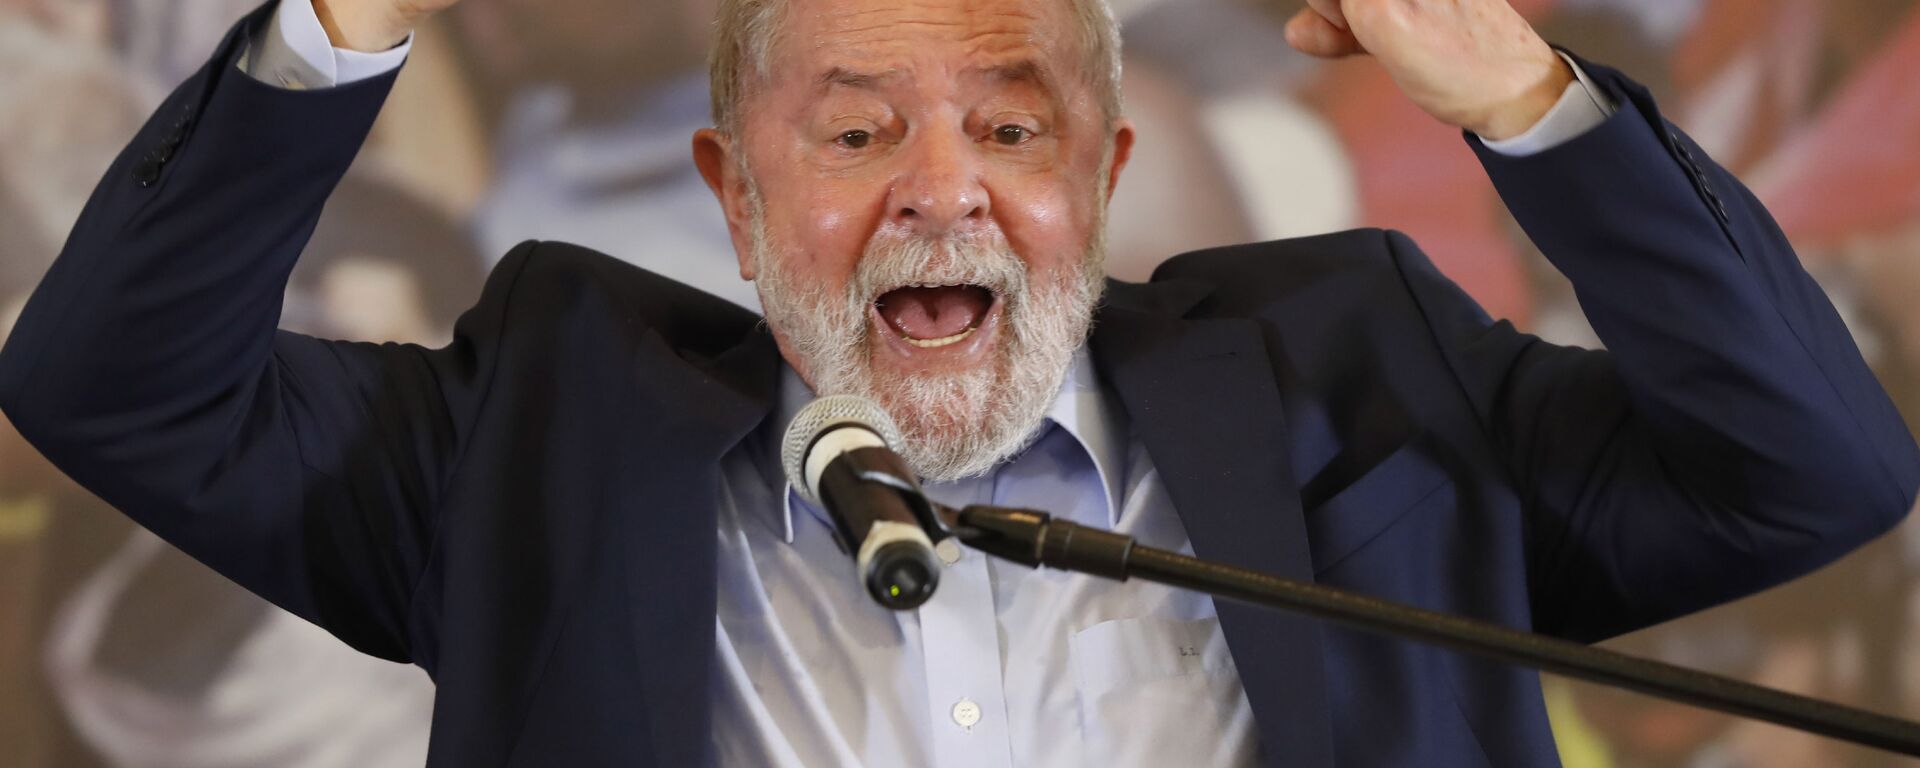 O ex-presidente Luiz Inácio Lula da Silva discursa no Sindicato dos Metalúrgicos, em São Bernardo do Campo. - Sputnik Brasil, 1920, 06.12.2021